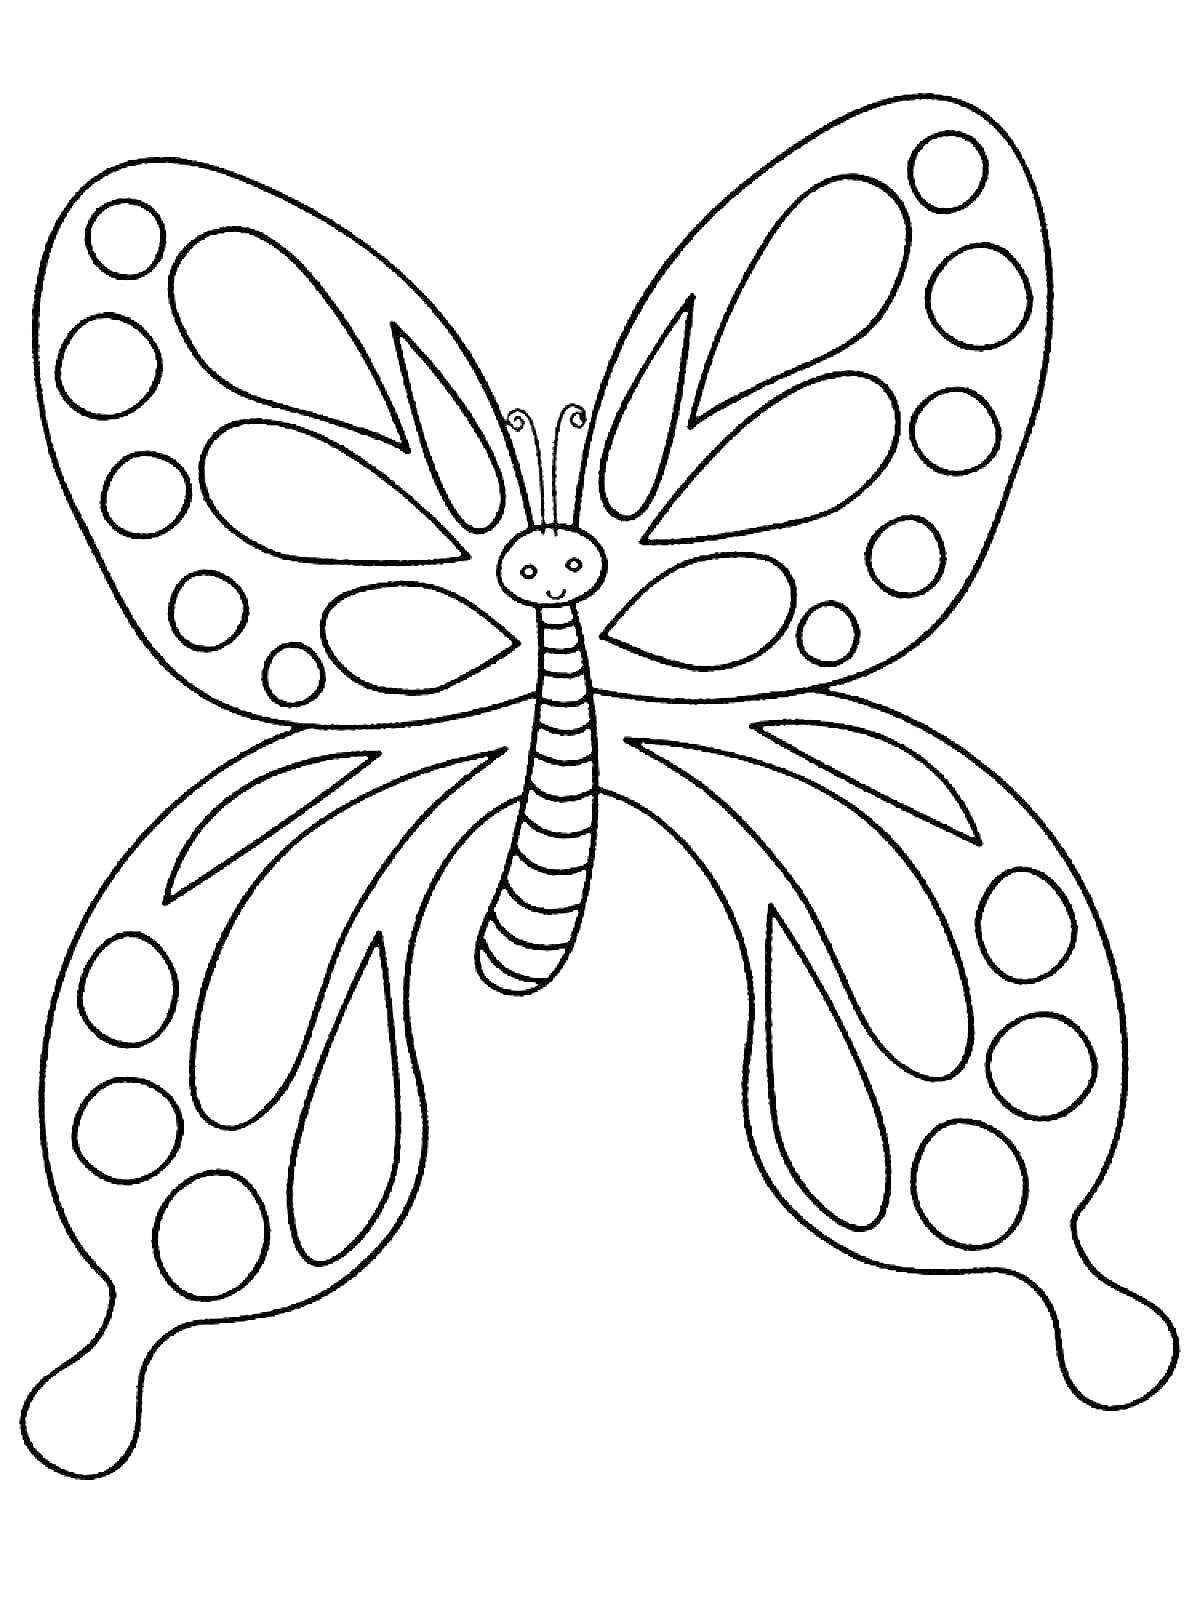 Бабочка с узором на крыльях, улыбающееся лицо